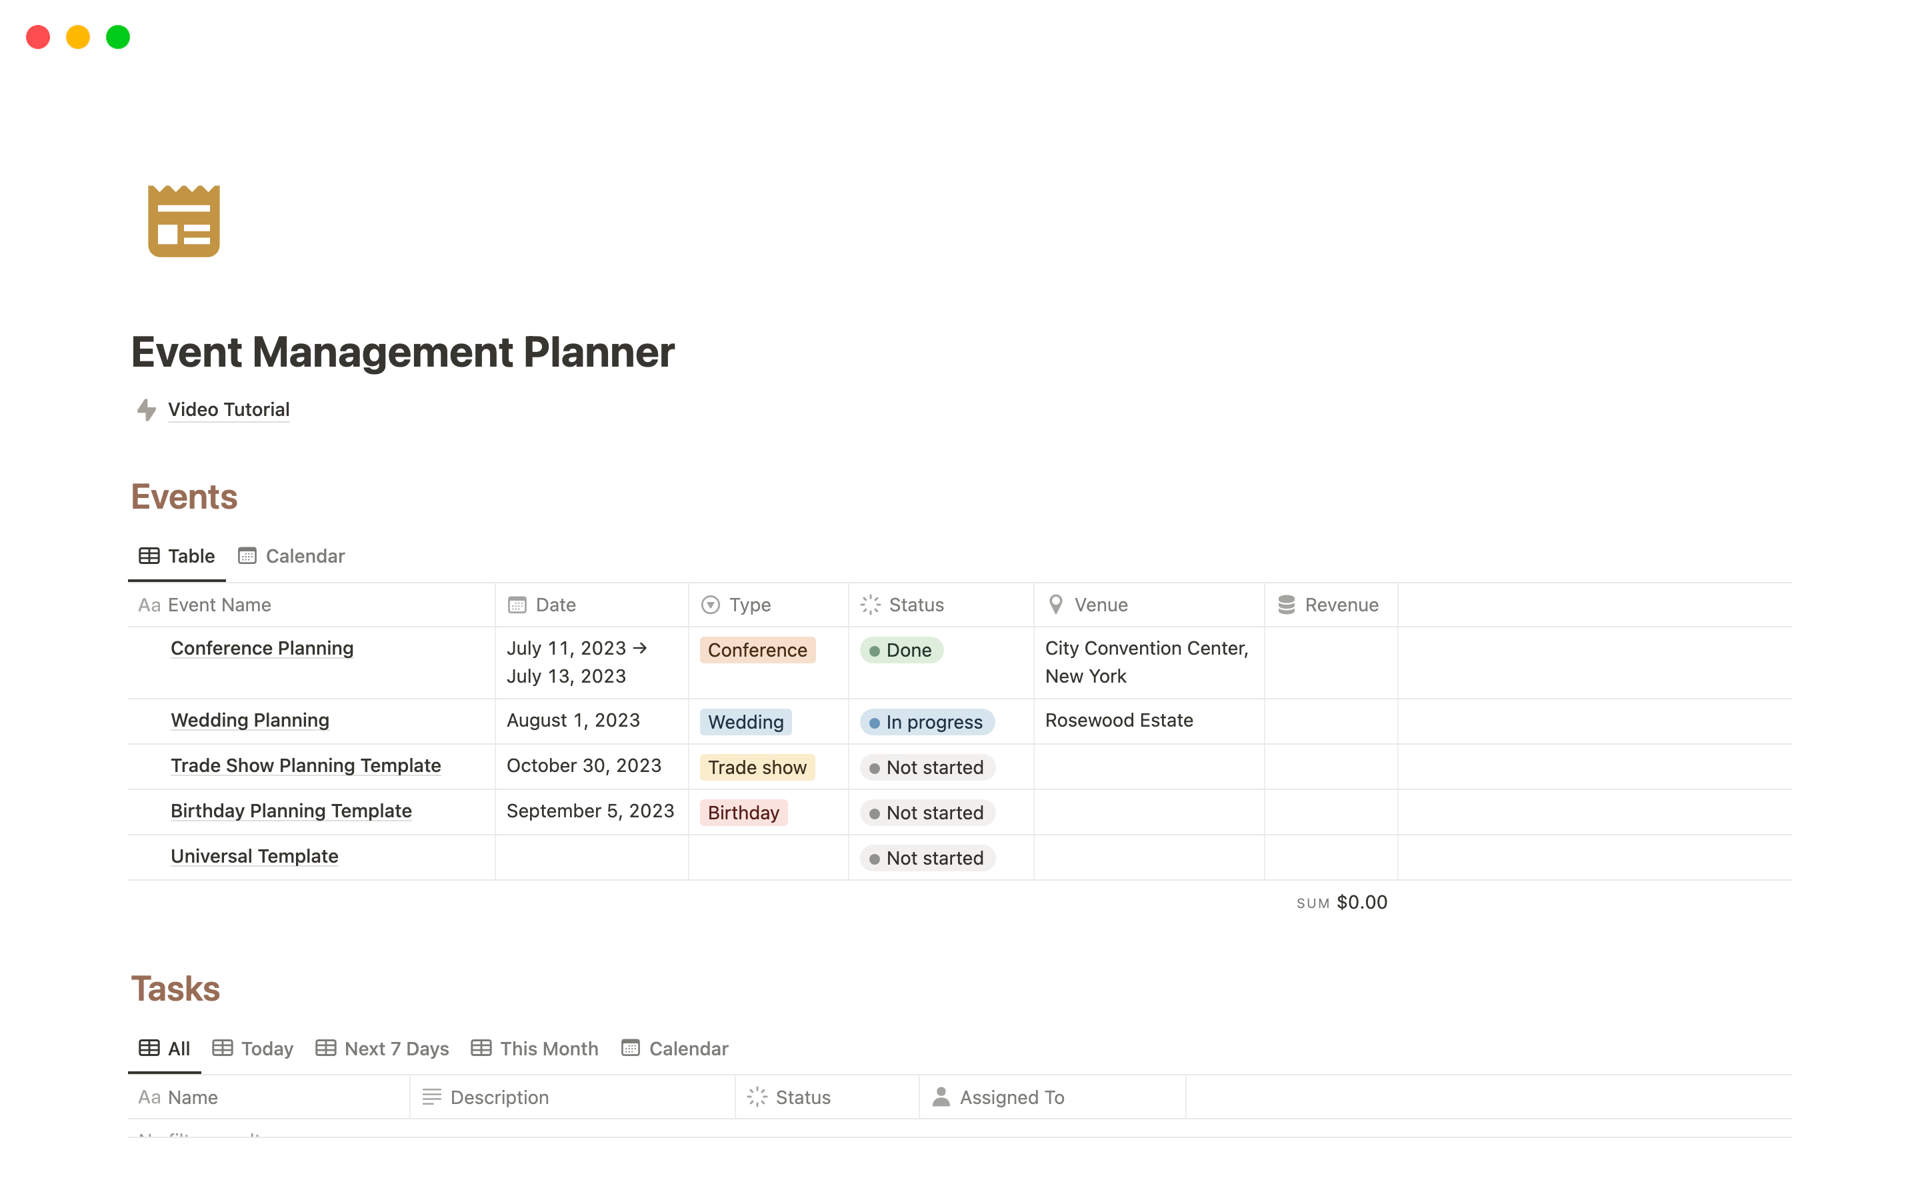 Uma prévia do modelo para Event Management Planner